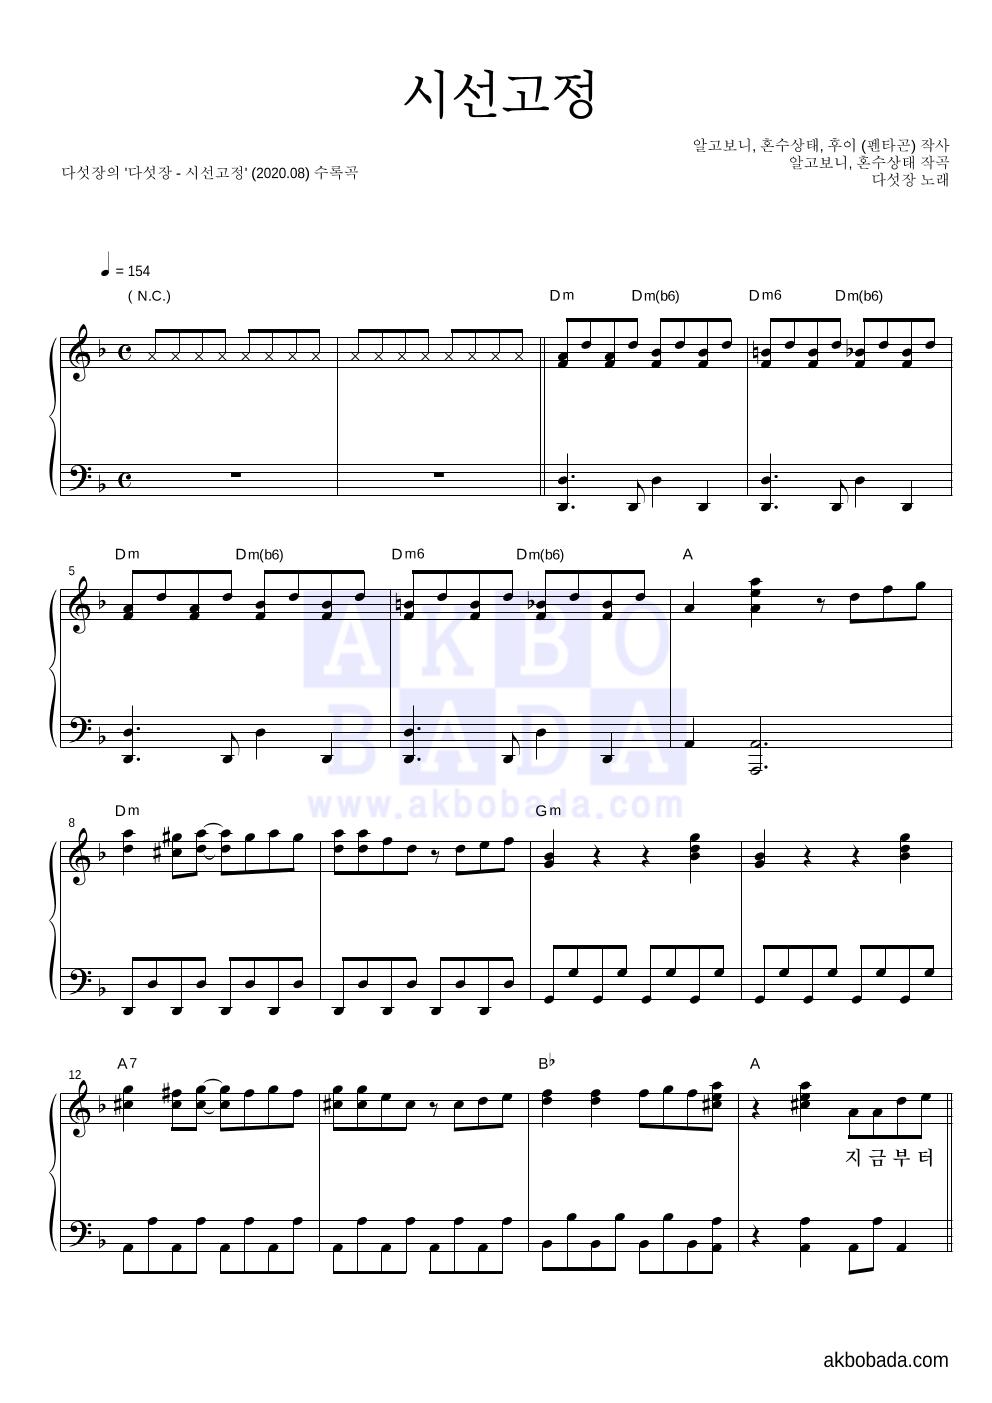 다섯장 - 시선고정 피아노 2단 악보 